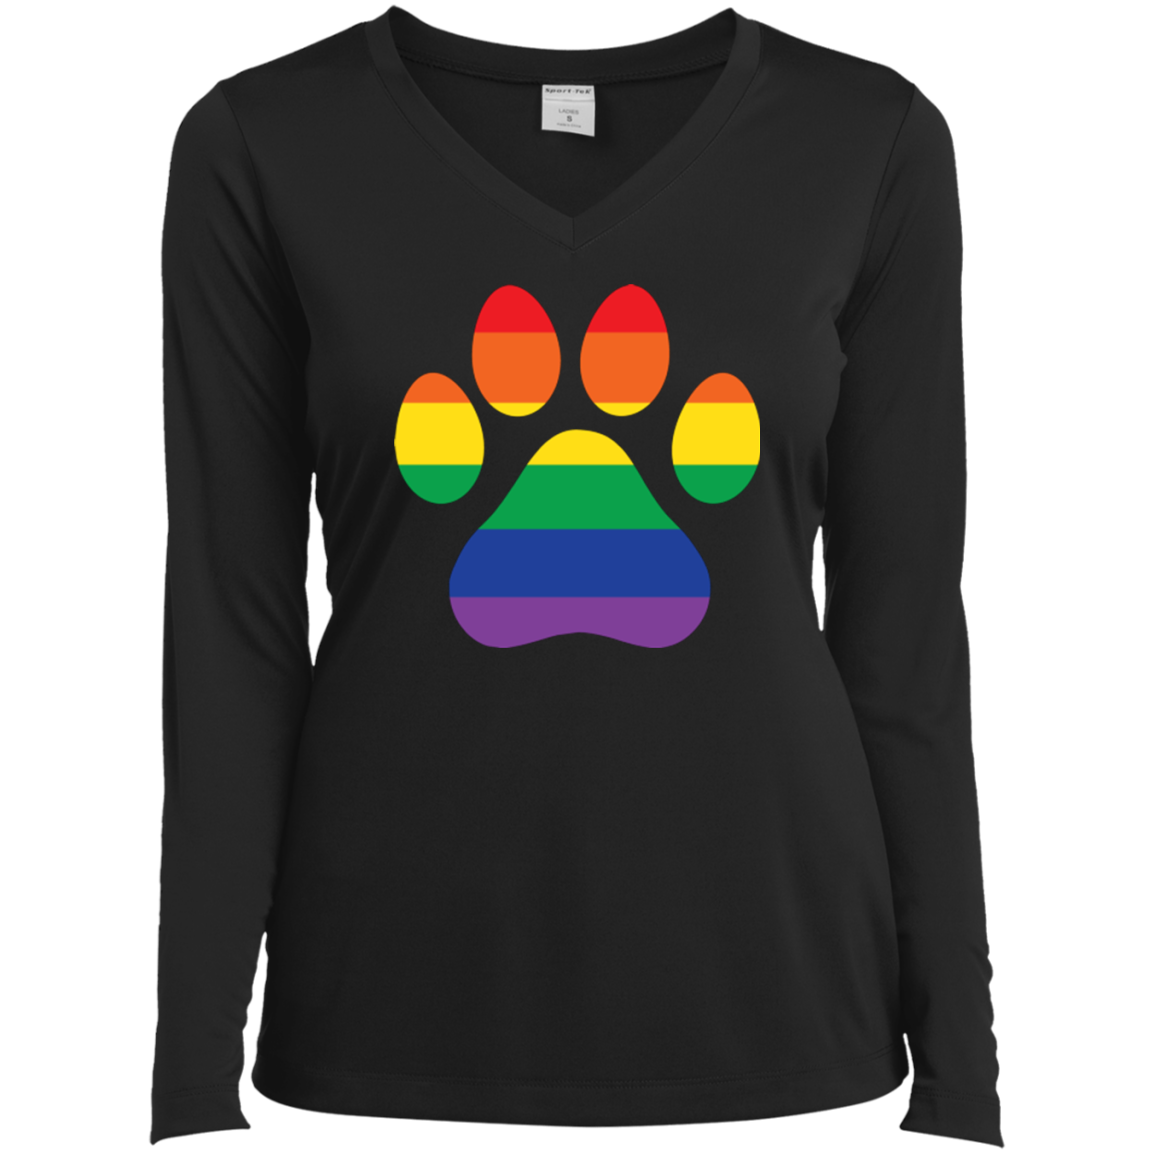 Rainbow pawprint black full sleeves v-neck tshirt for women